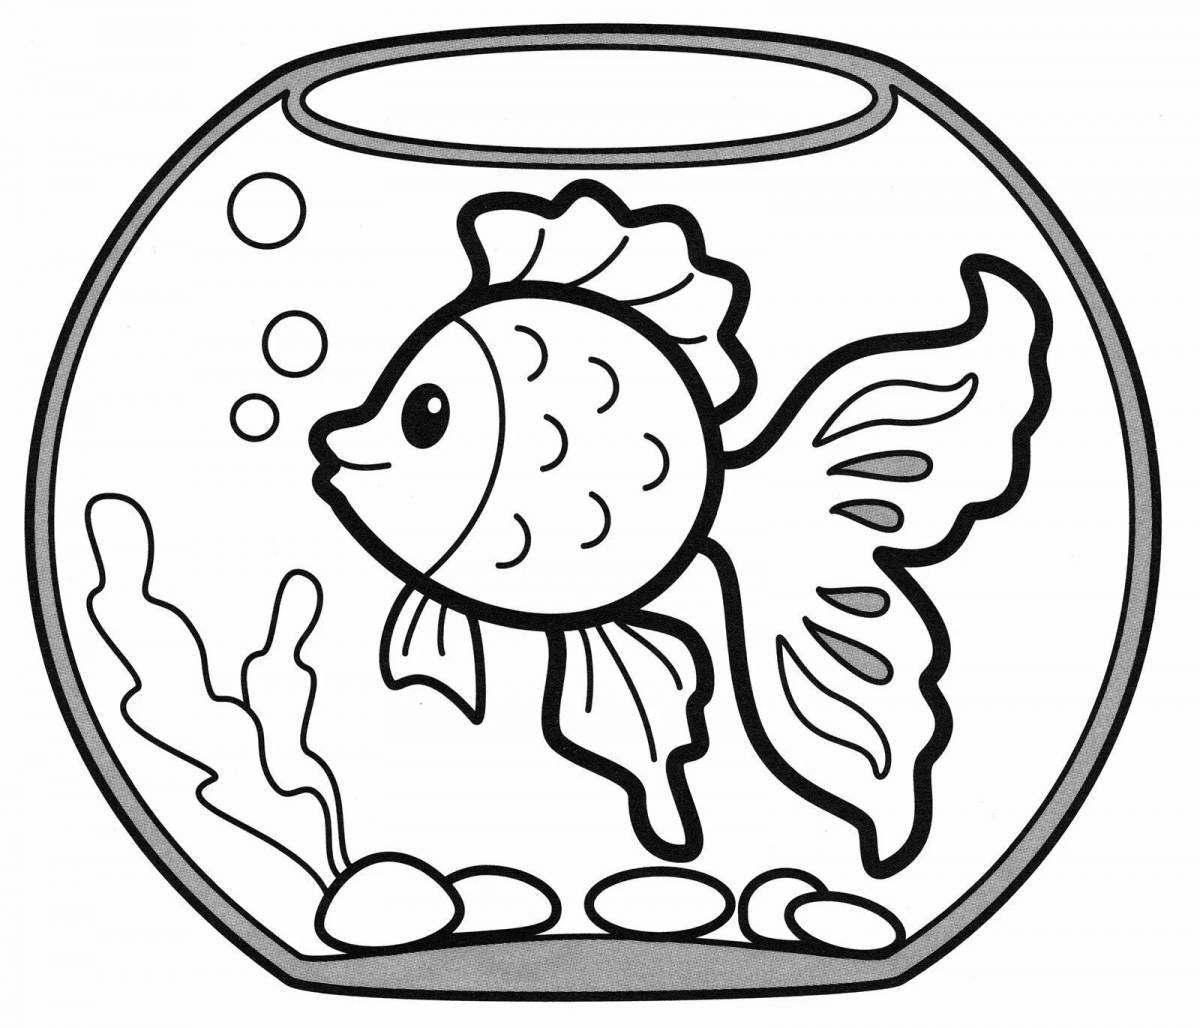 Блестящая аквариумная рыбка-раскраска для детей